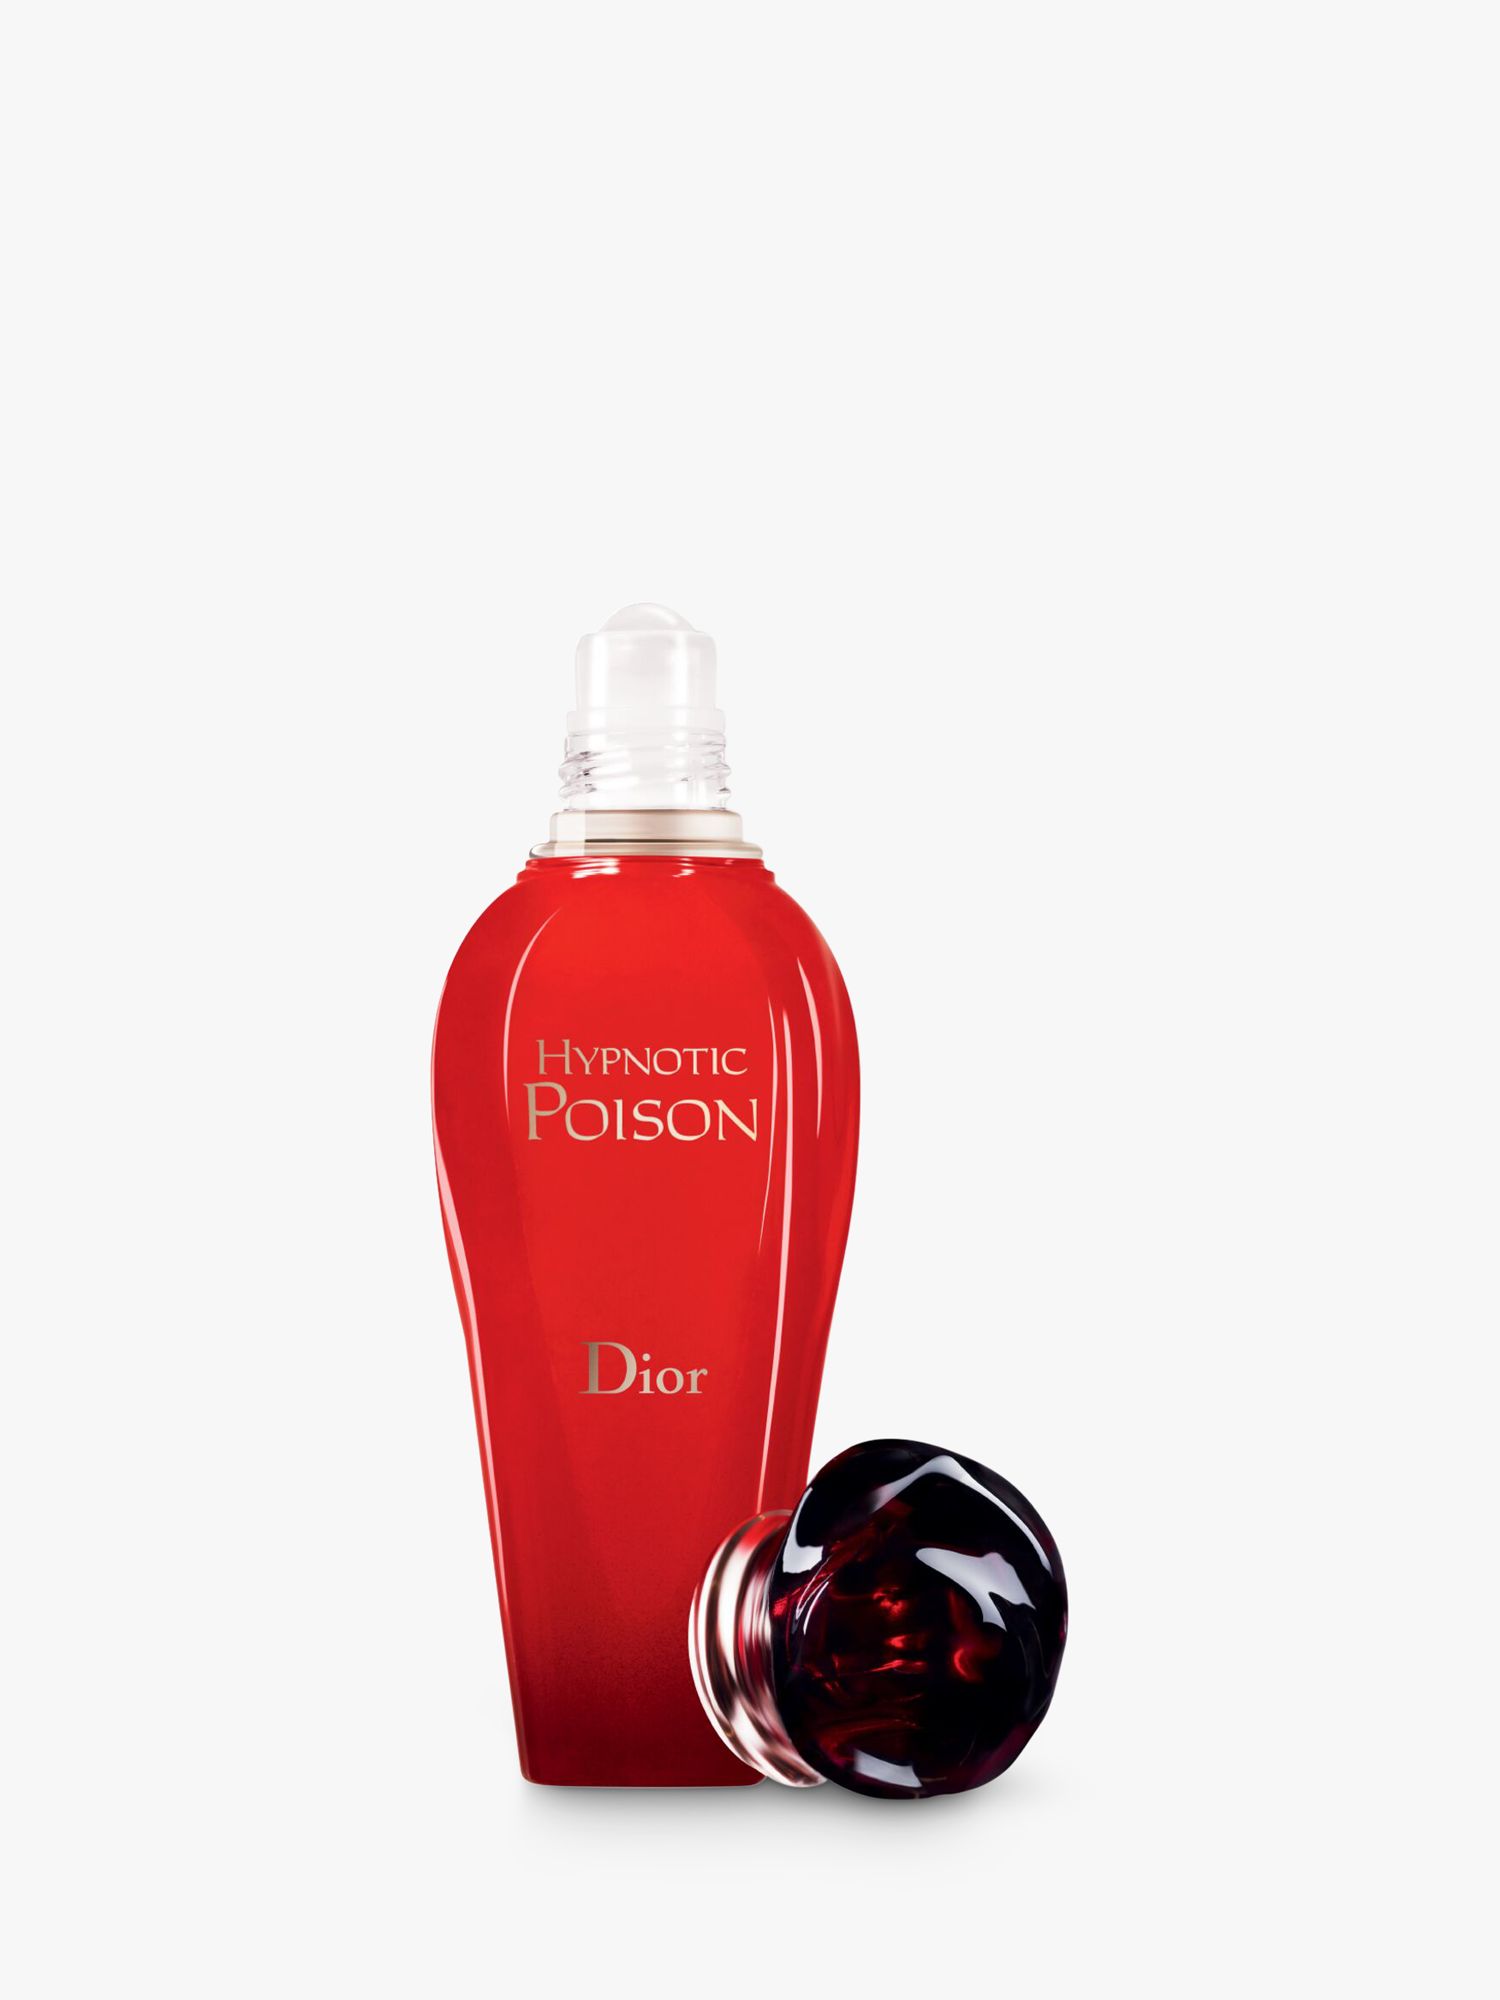 Dior Hypnotic Poison Eau De Toilette Roller Pearl ml At John Lewis Partners